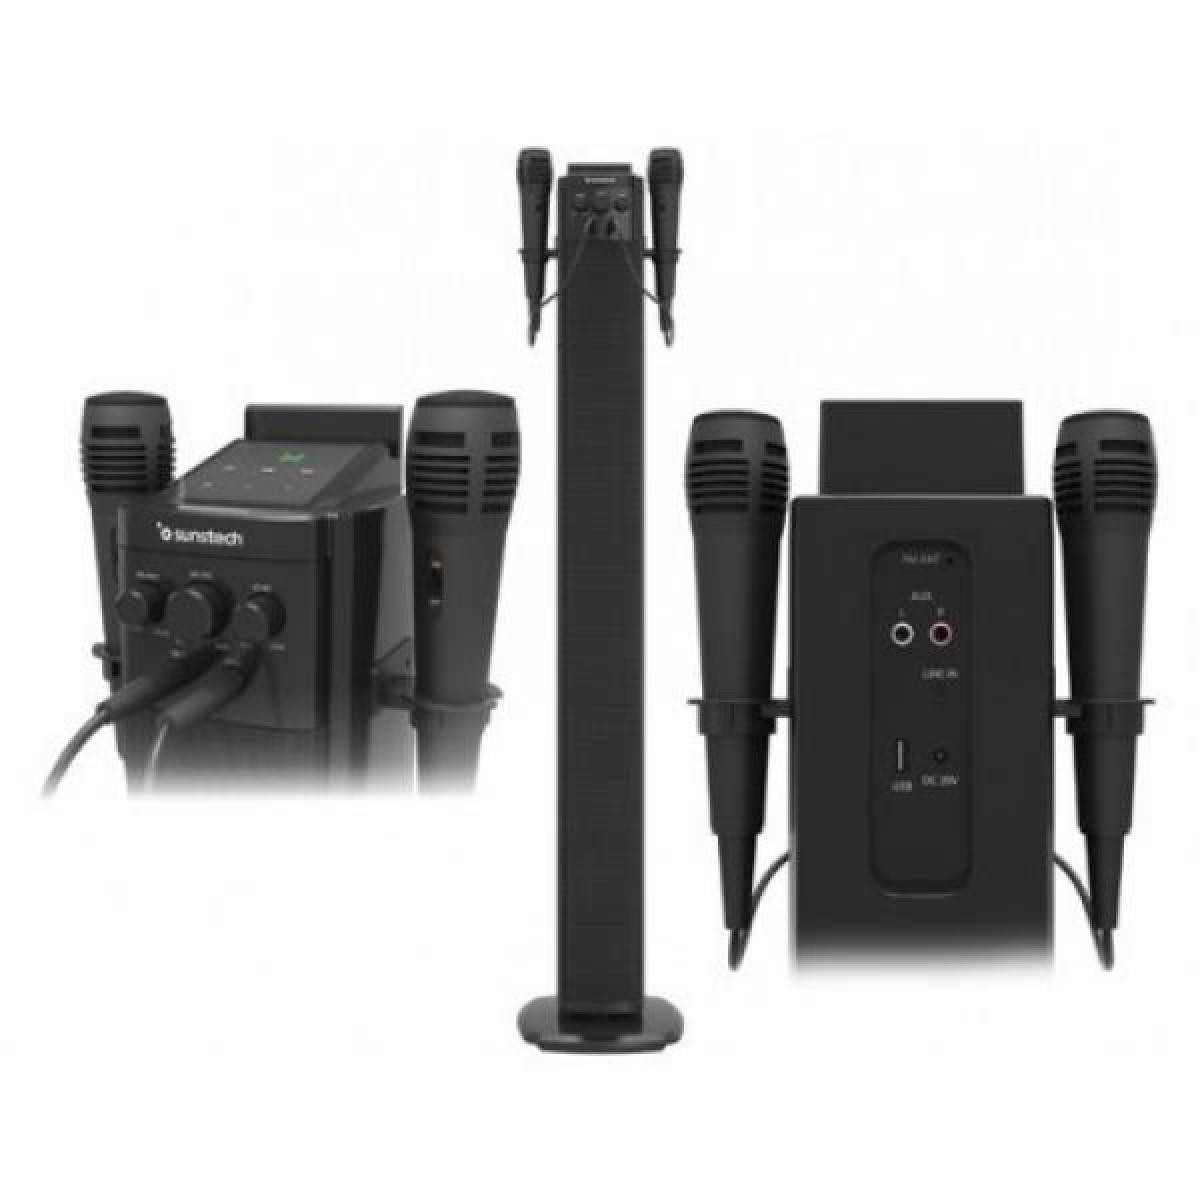 Sunstech - Altavoz Sunstech Torre Bluetooth 40w 2 Microfonos - Drone connecté